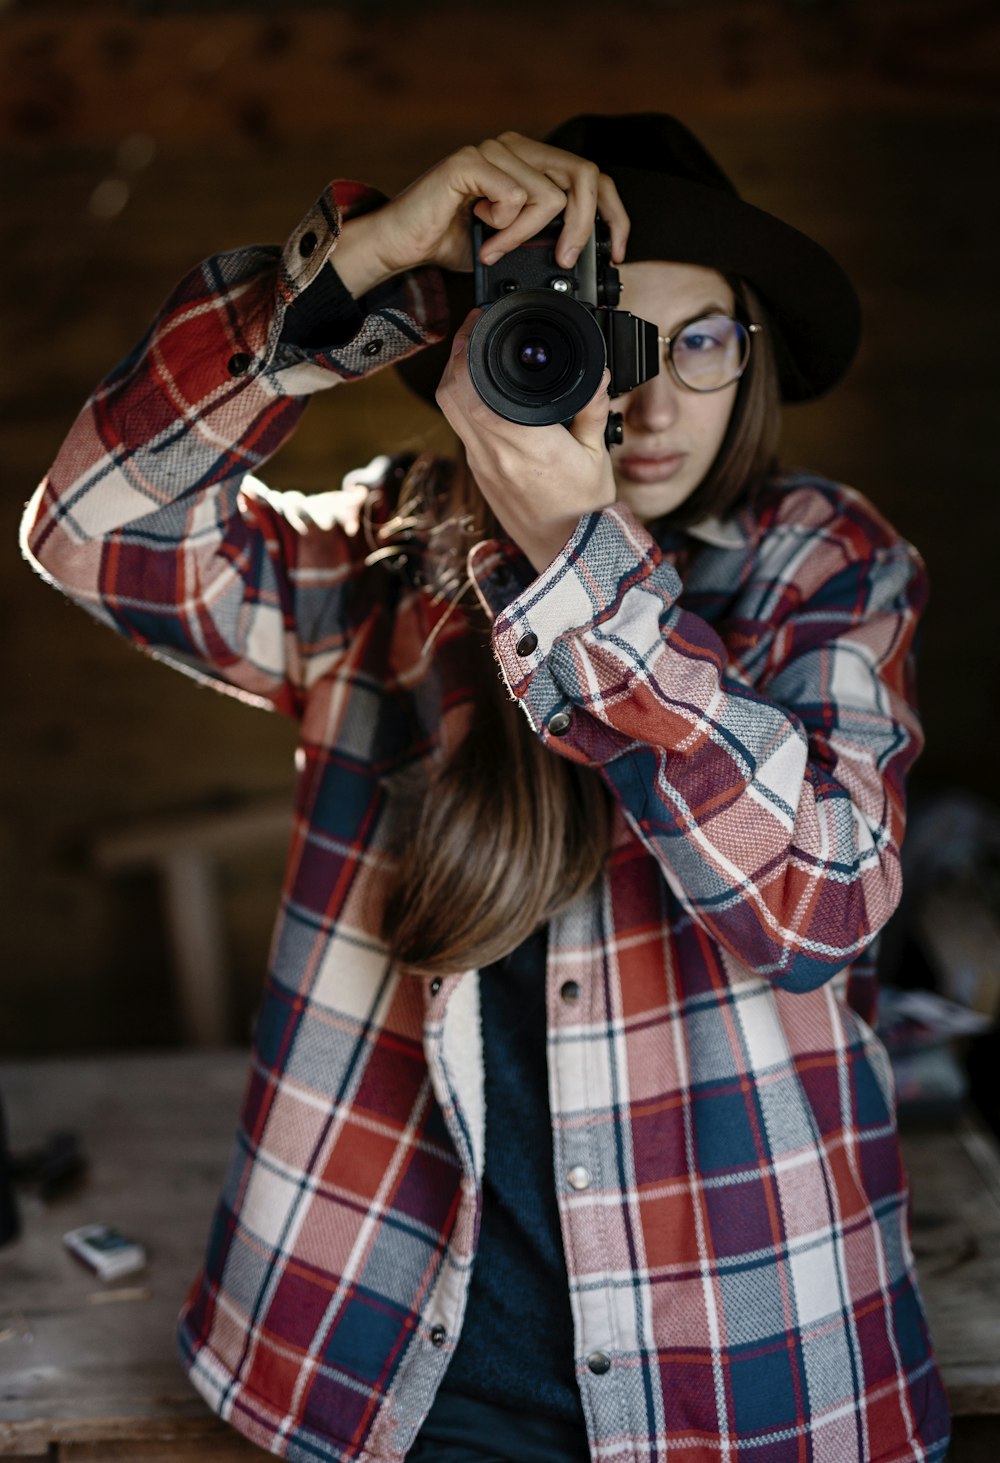 黒のデジタル一眼レフカメラを持つ赤、白、黒の格子縞のドレスシャツを着た女性